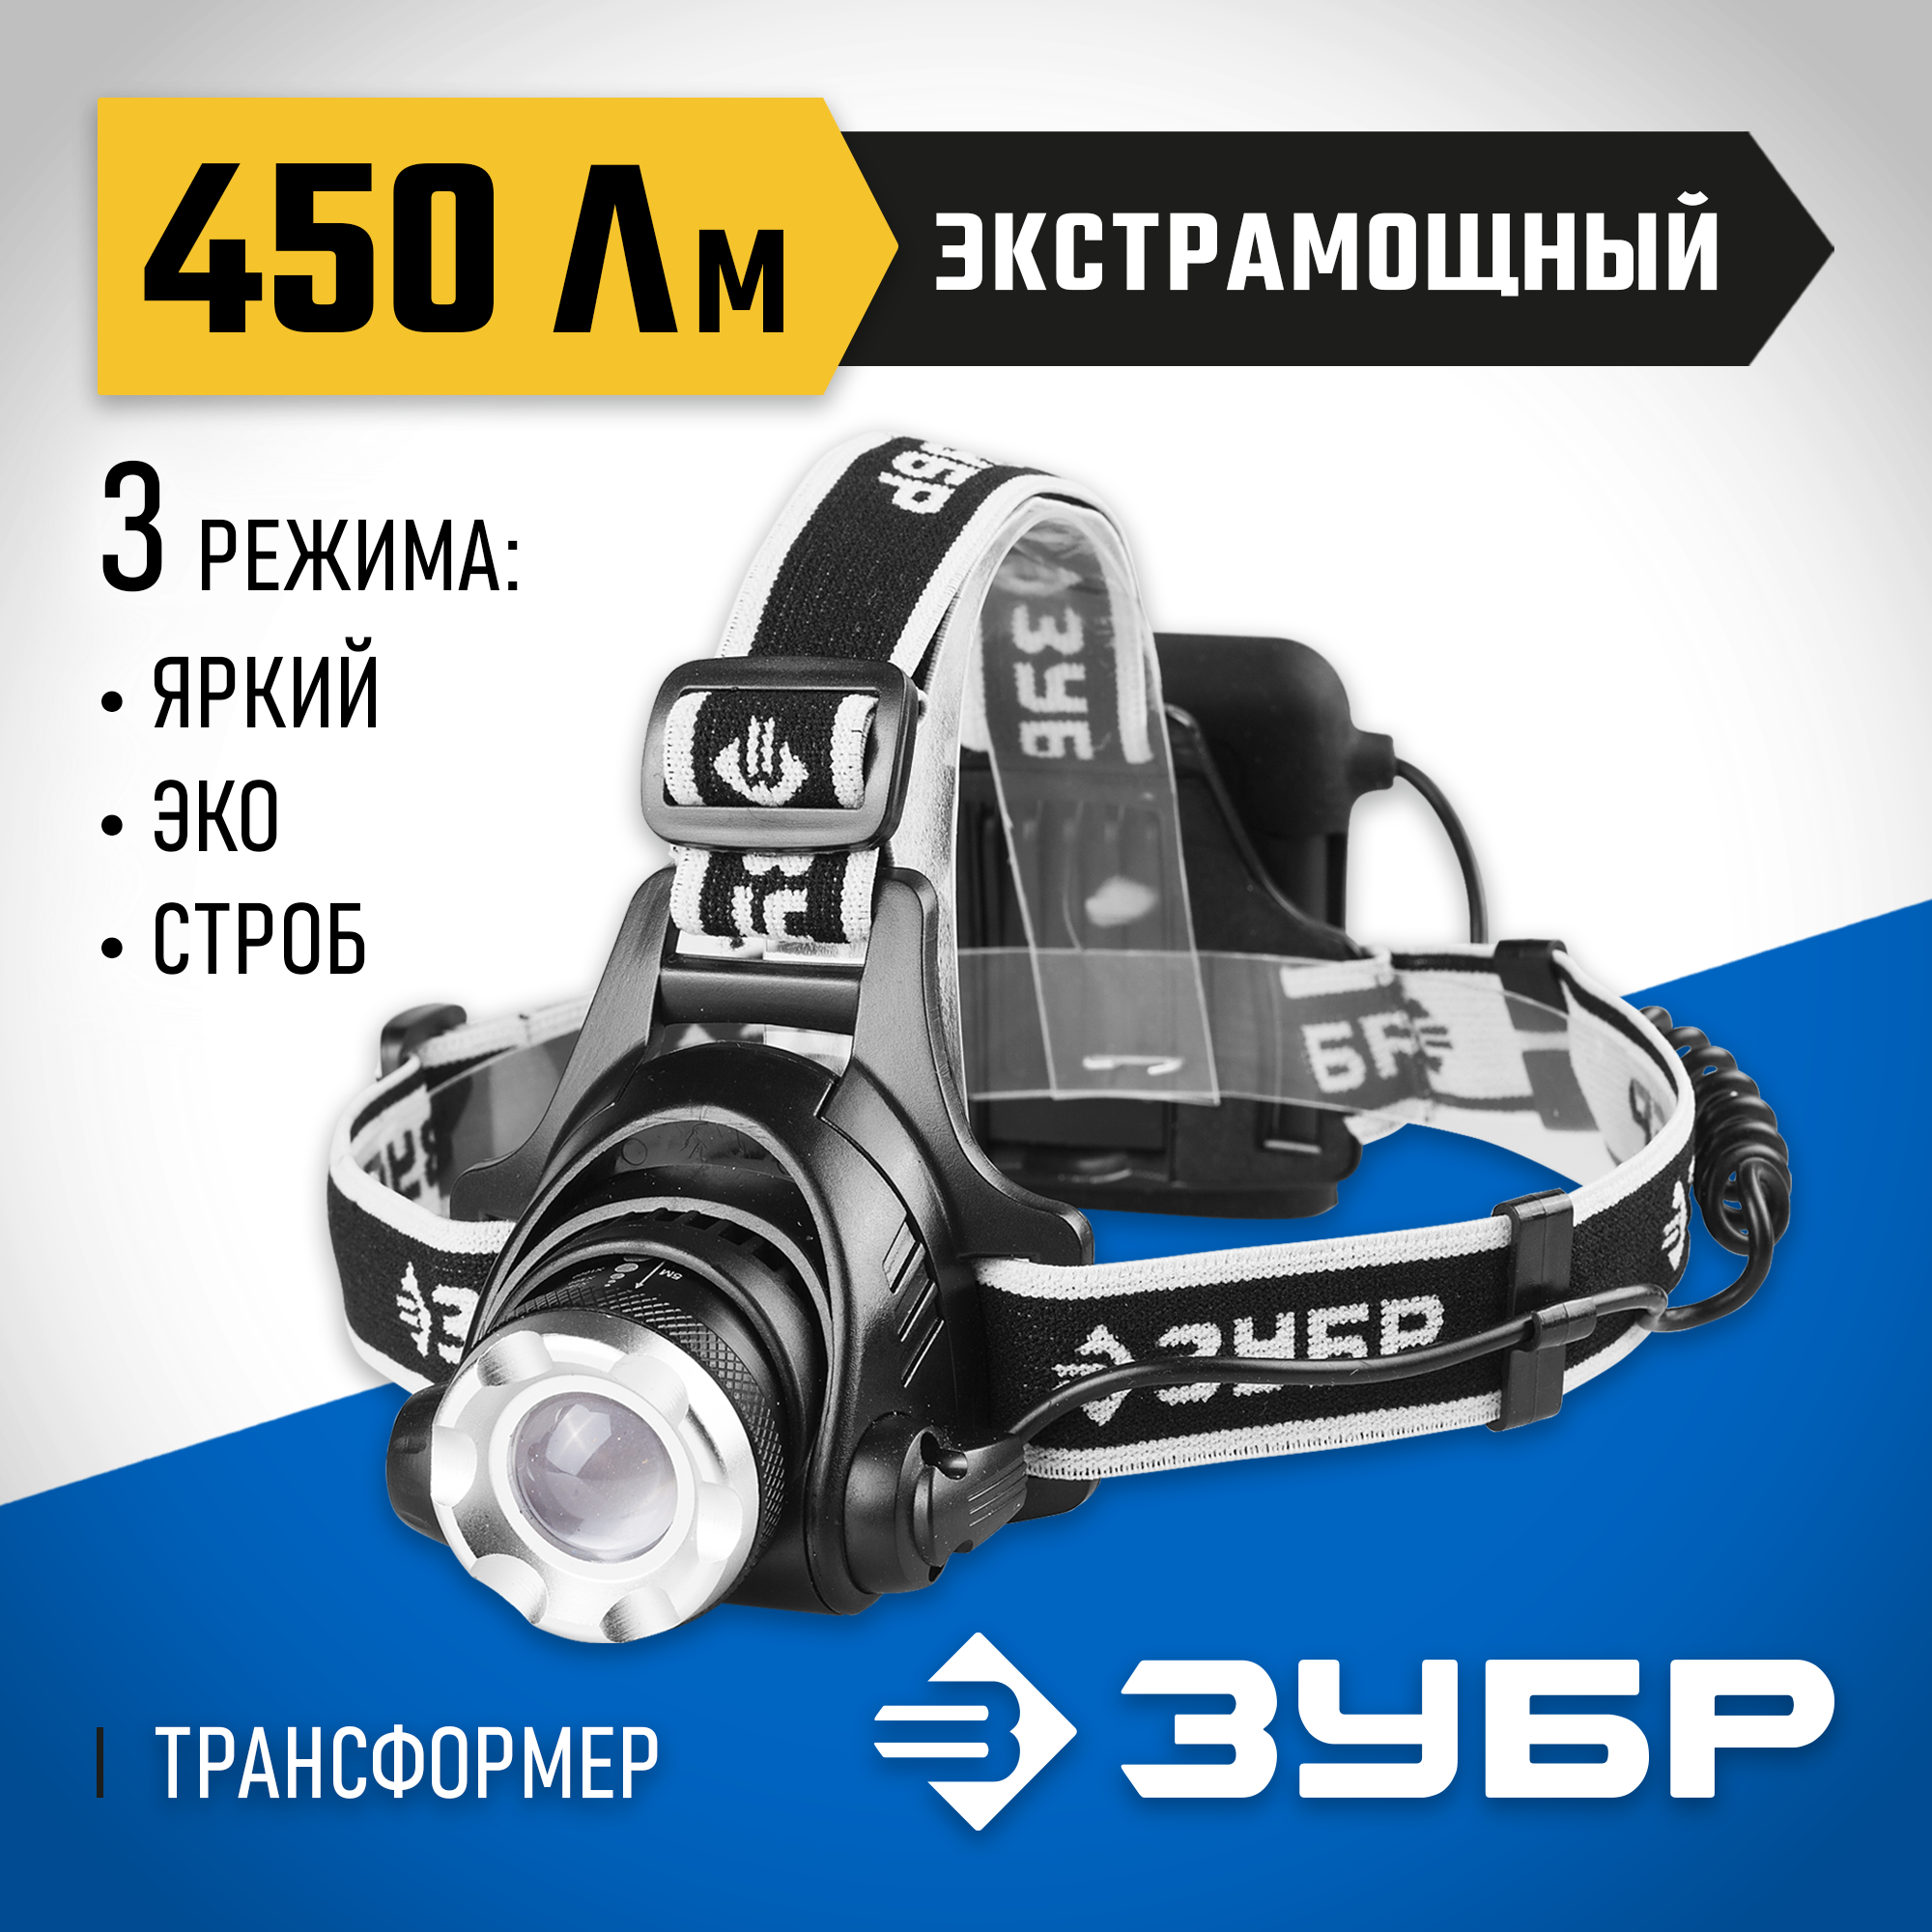 ЗУБР РХ-650, 4 AA, 450 Лм, 3 режима, налобный светодиодный фонарь, Профессионал (56430)